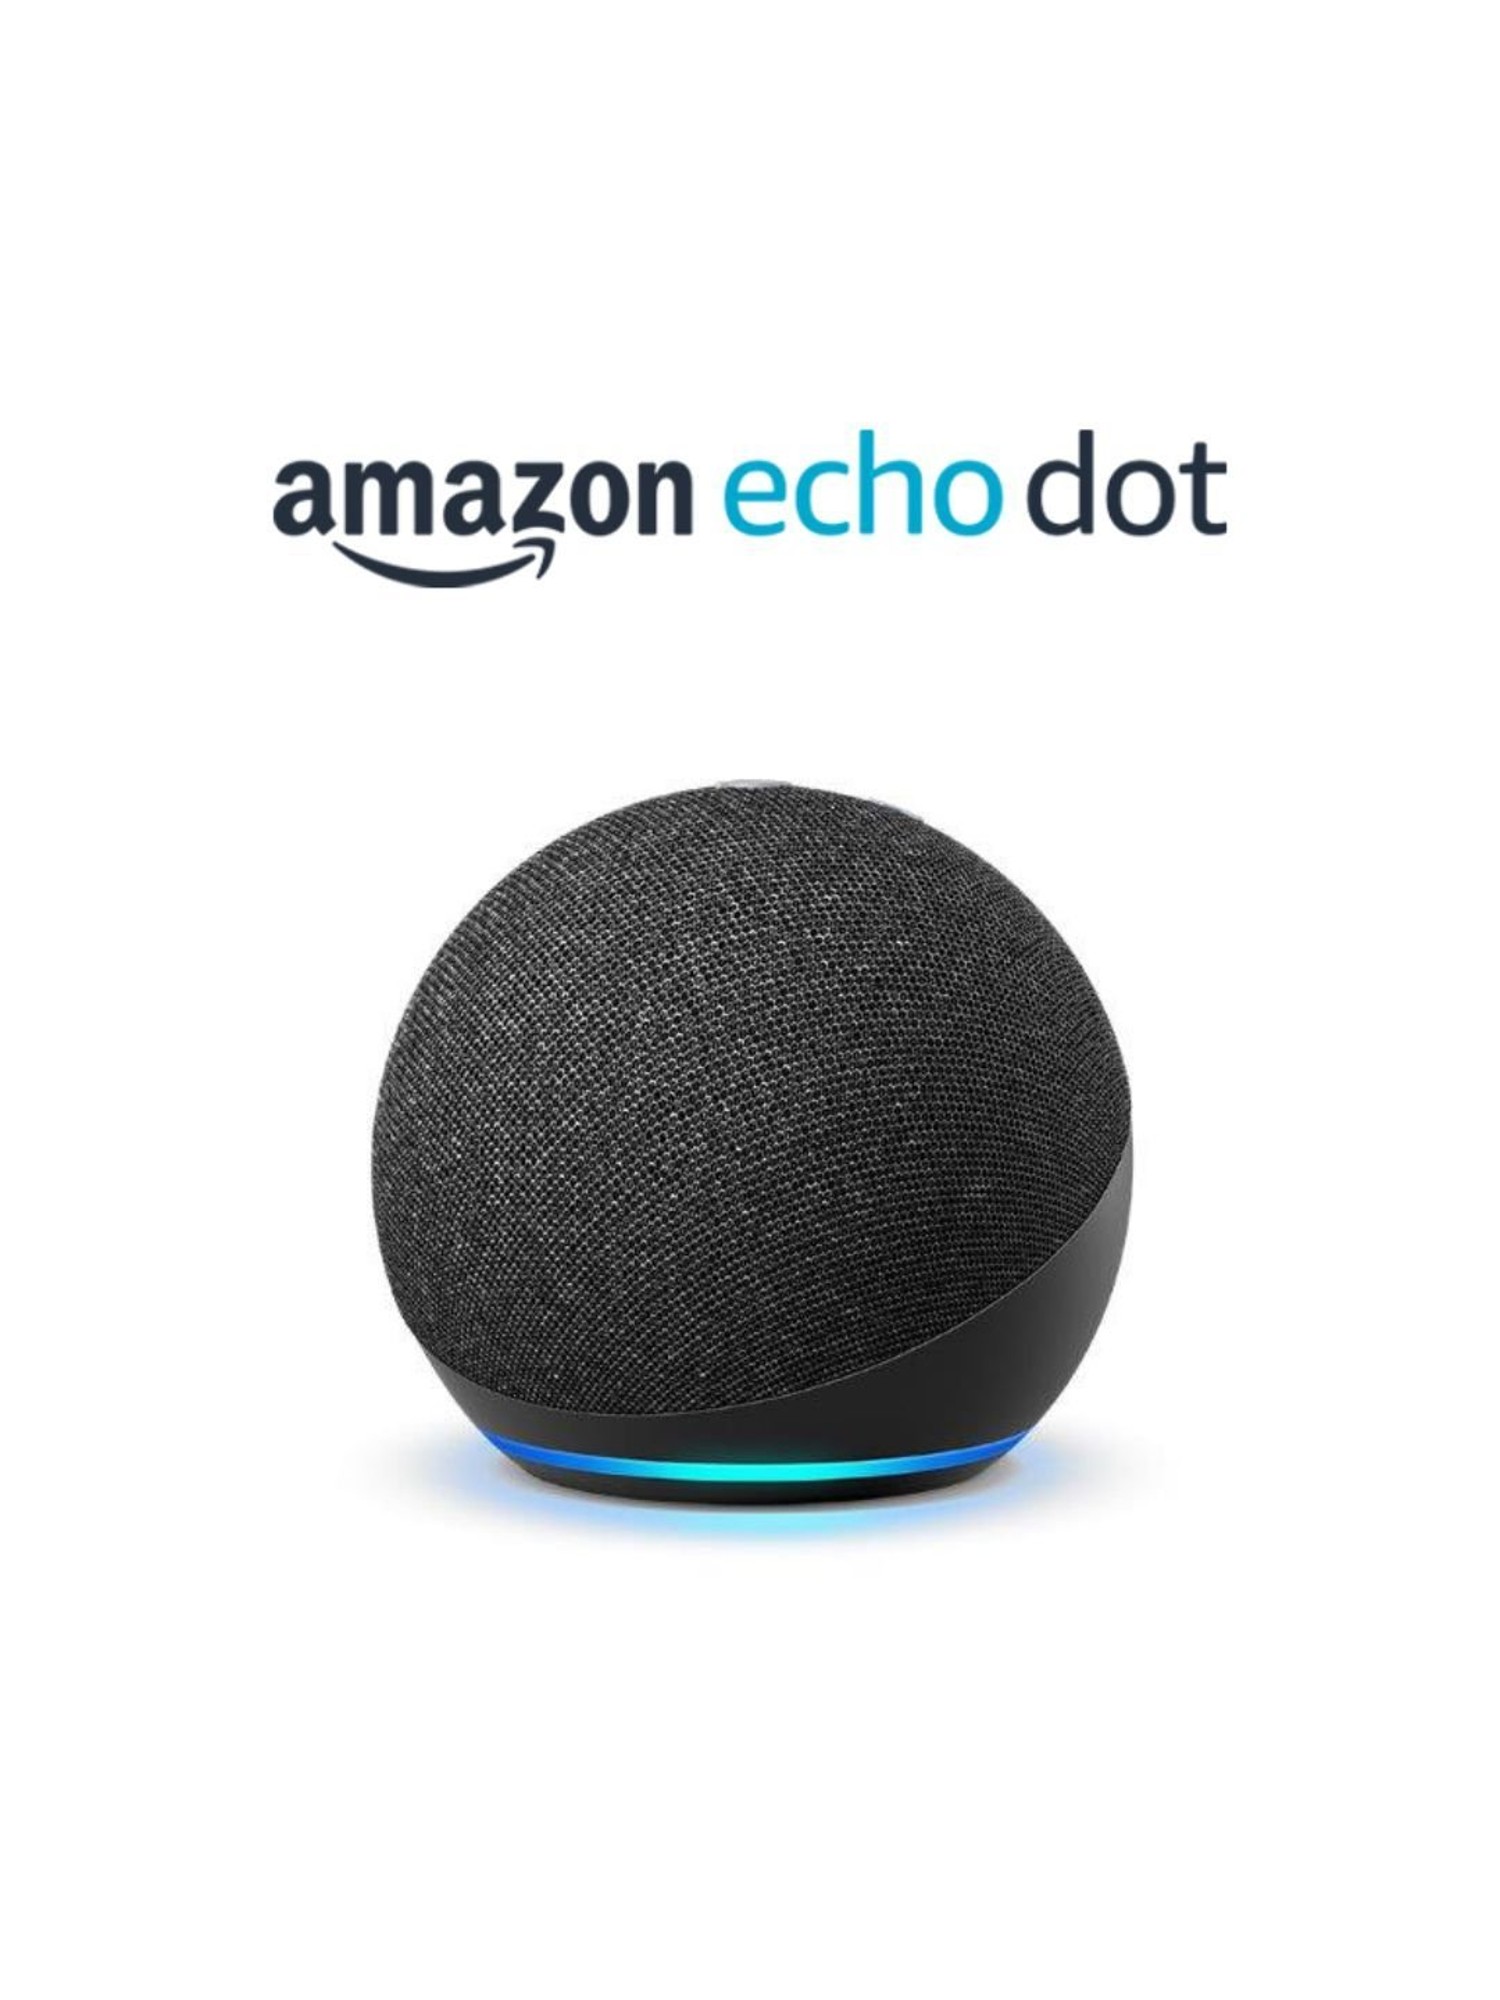 Buy Amazon Echo Dot Wireless Smart Speaker with Amazon Alexa